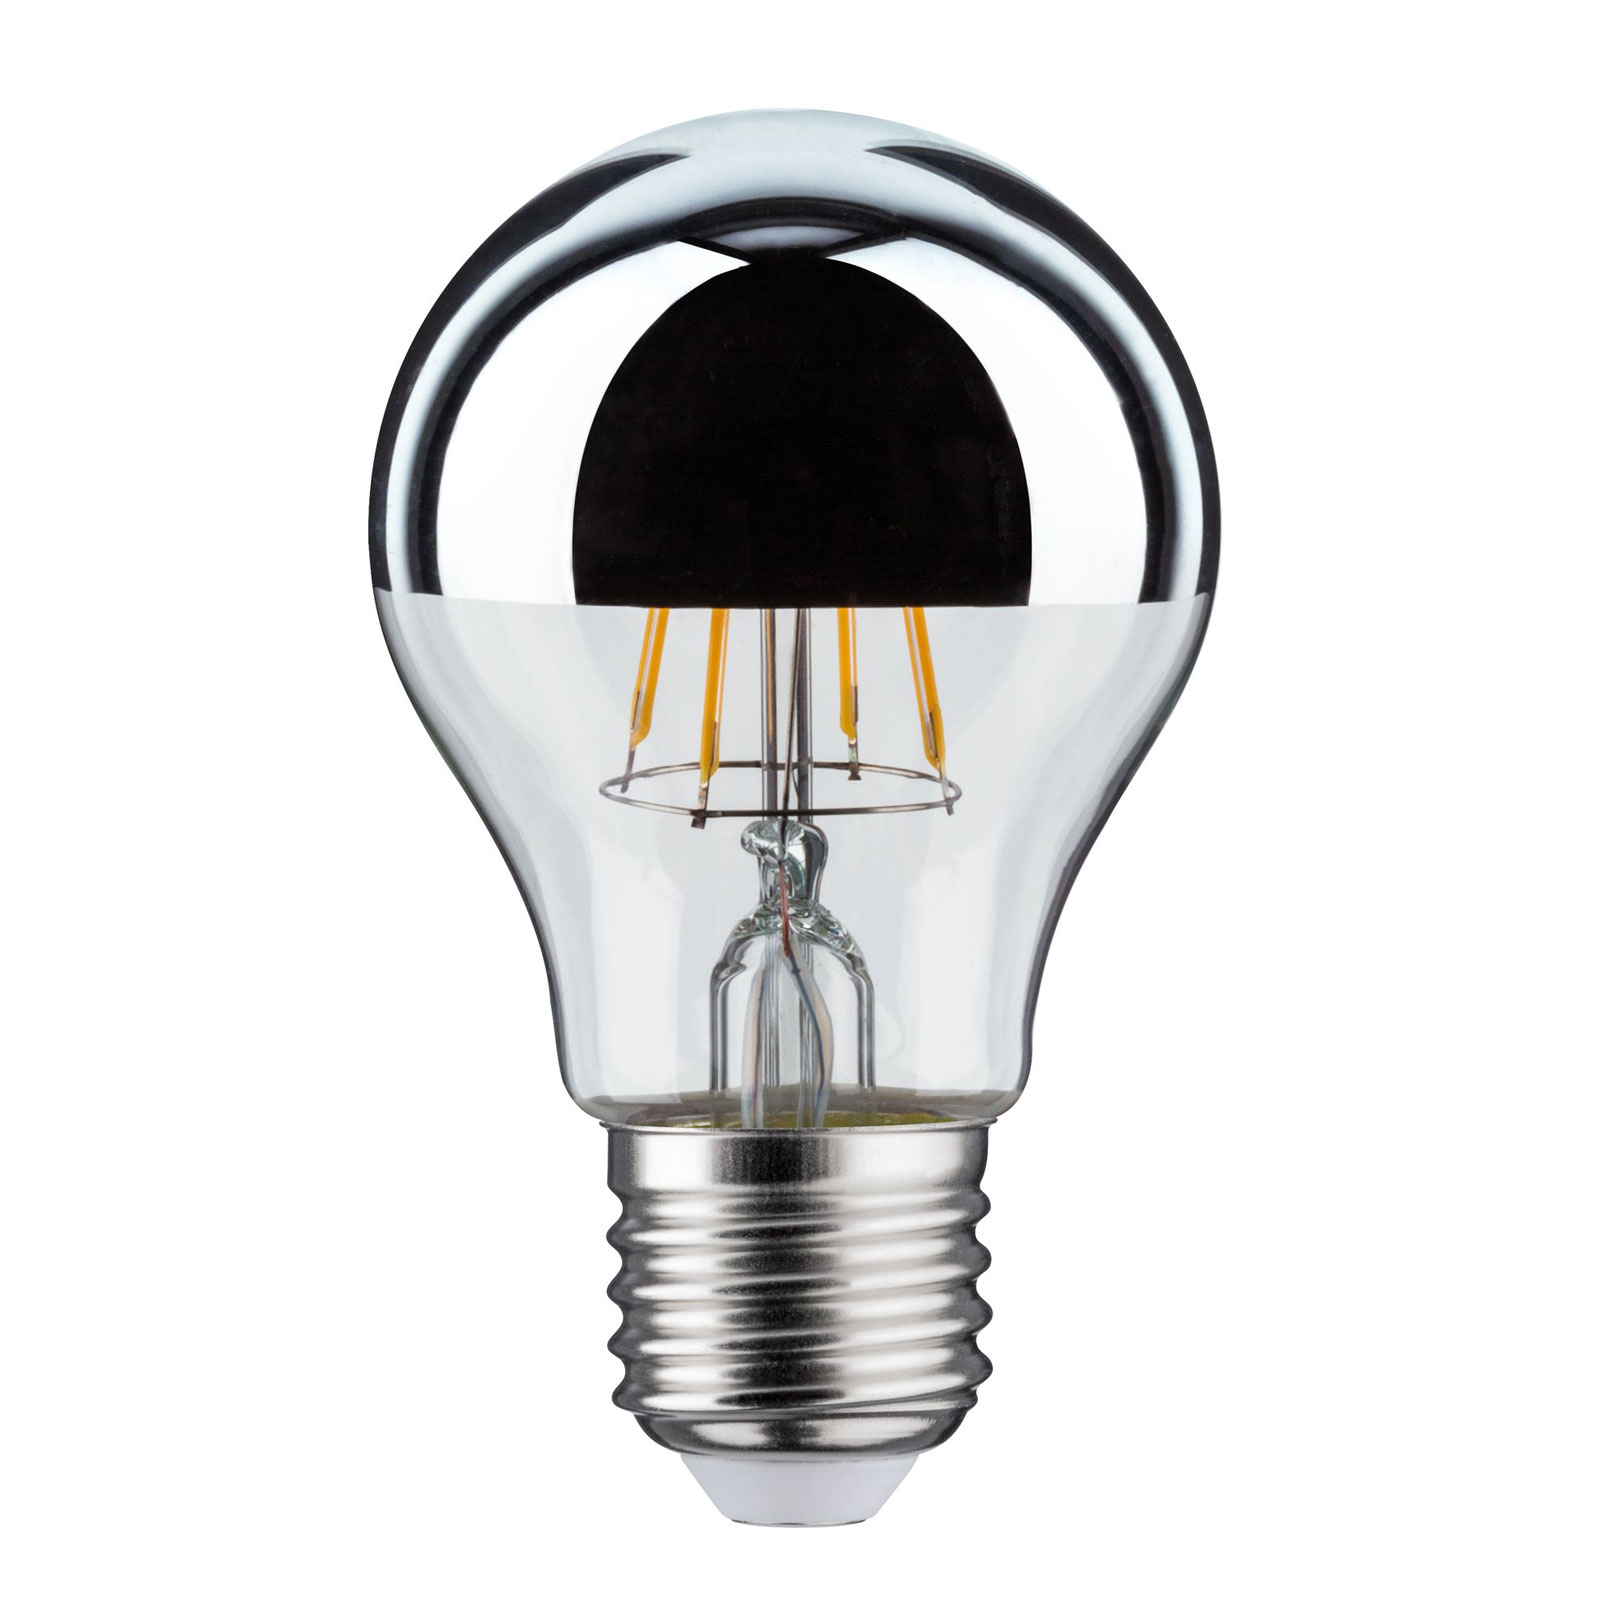 LED-lampa E27 drop 827 huvudspegel 4,8W